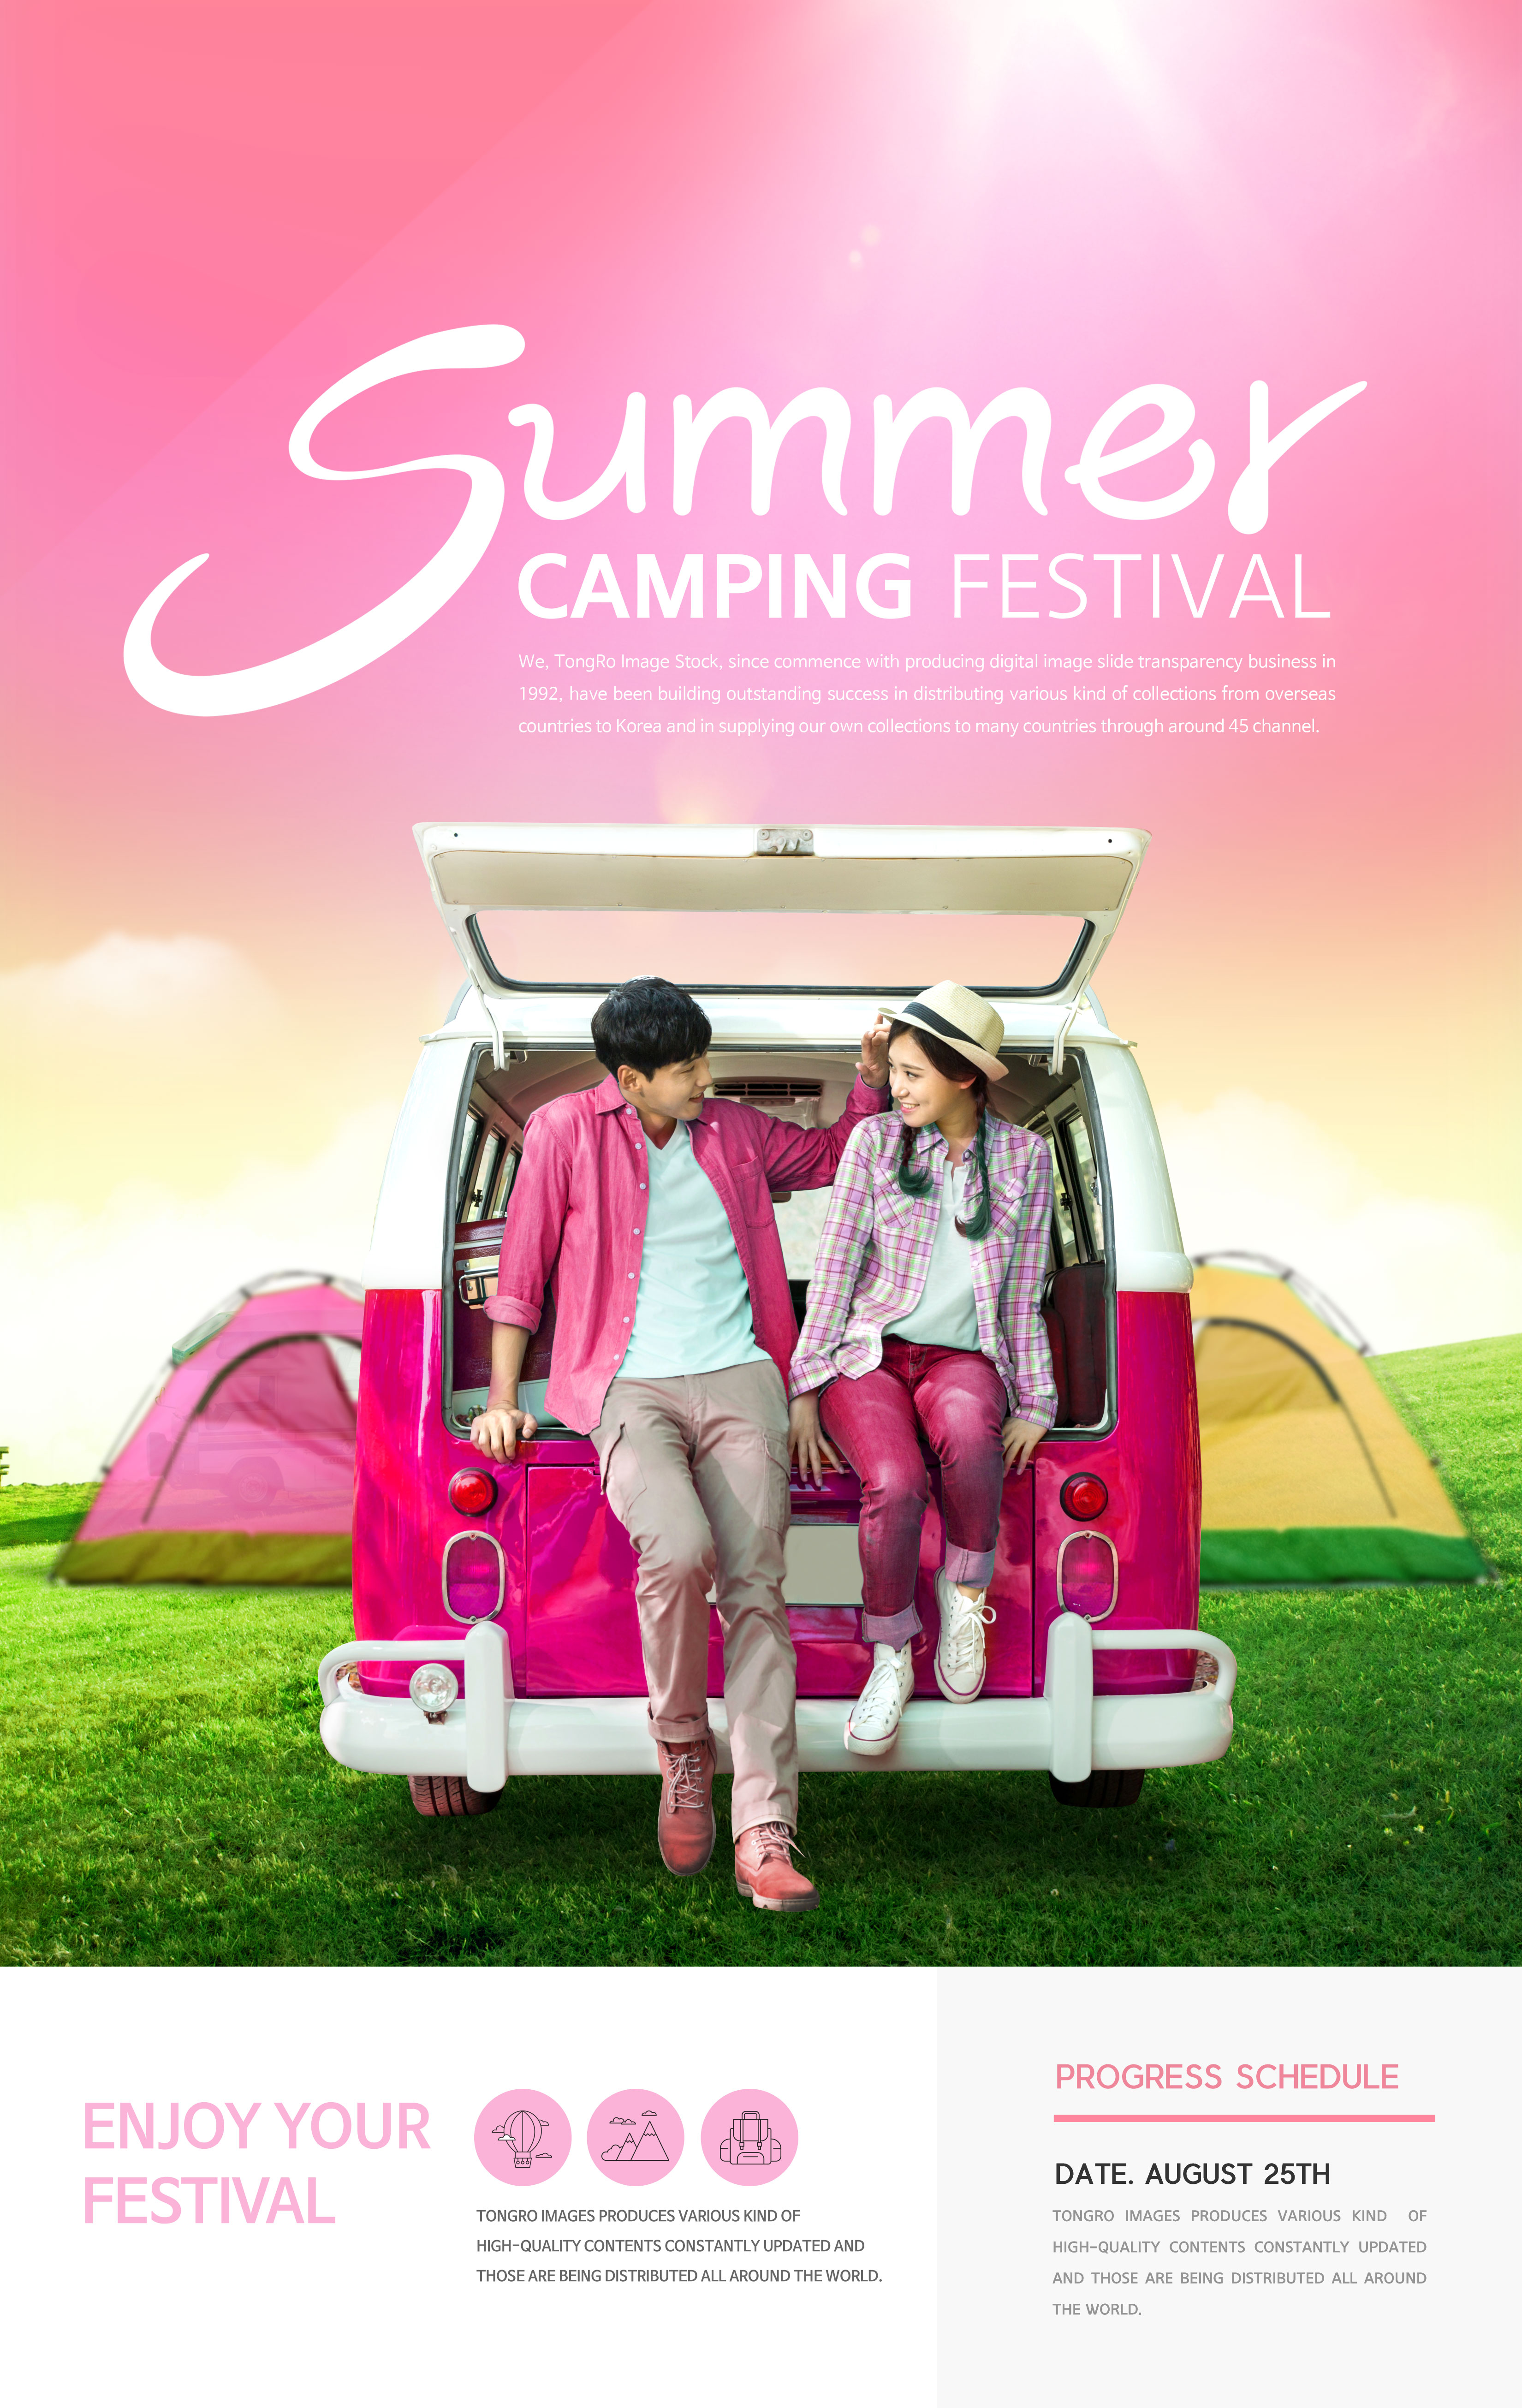 夏季自驾游/野外露营活动宣传海报设计插图